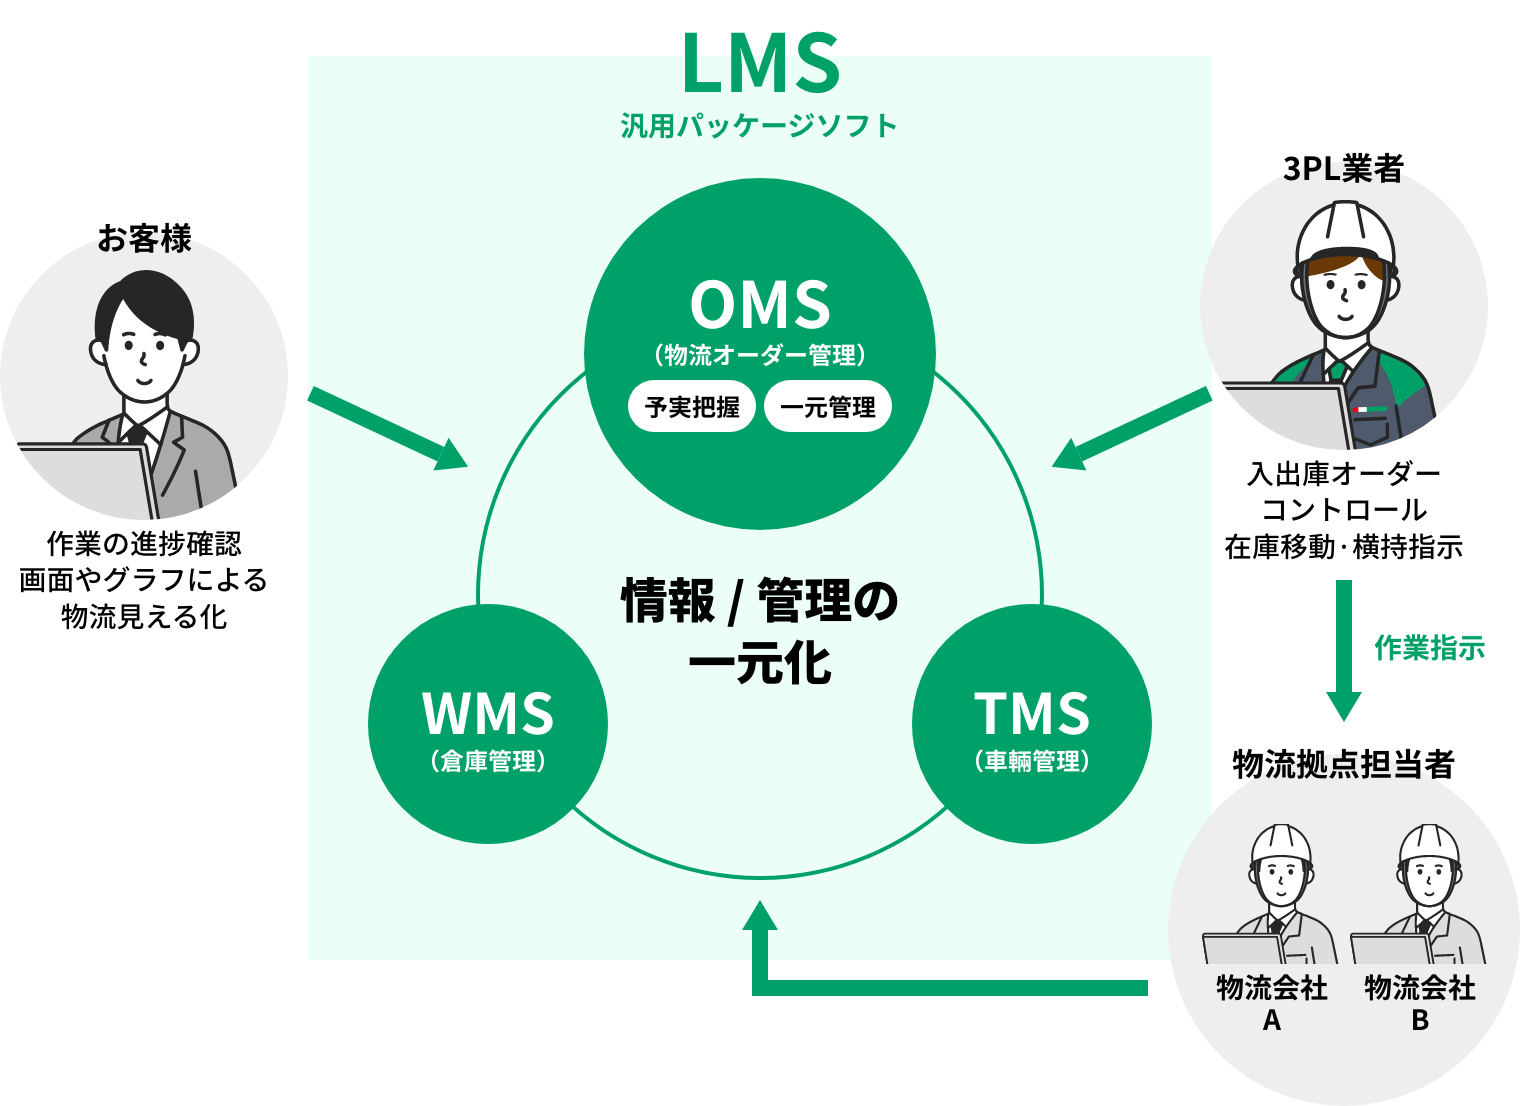 『LMS(Logistics Management System)』でＯＭＳ(物流オーダー管理)、ＷＭＳ(倉庫管理)、ＴＭＳ(車両管理)を一つのシステムとして構築することにより、すべての業務を一元管理が可能な様子を表した図説です。